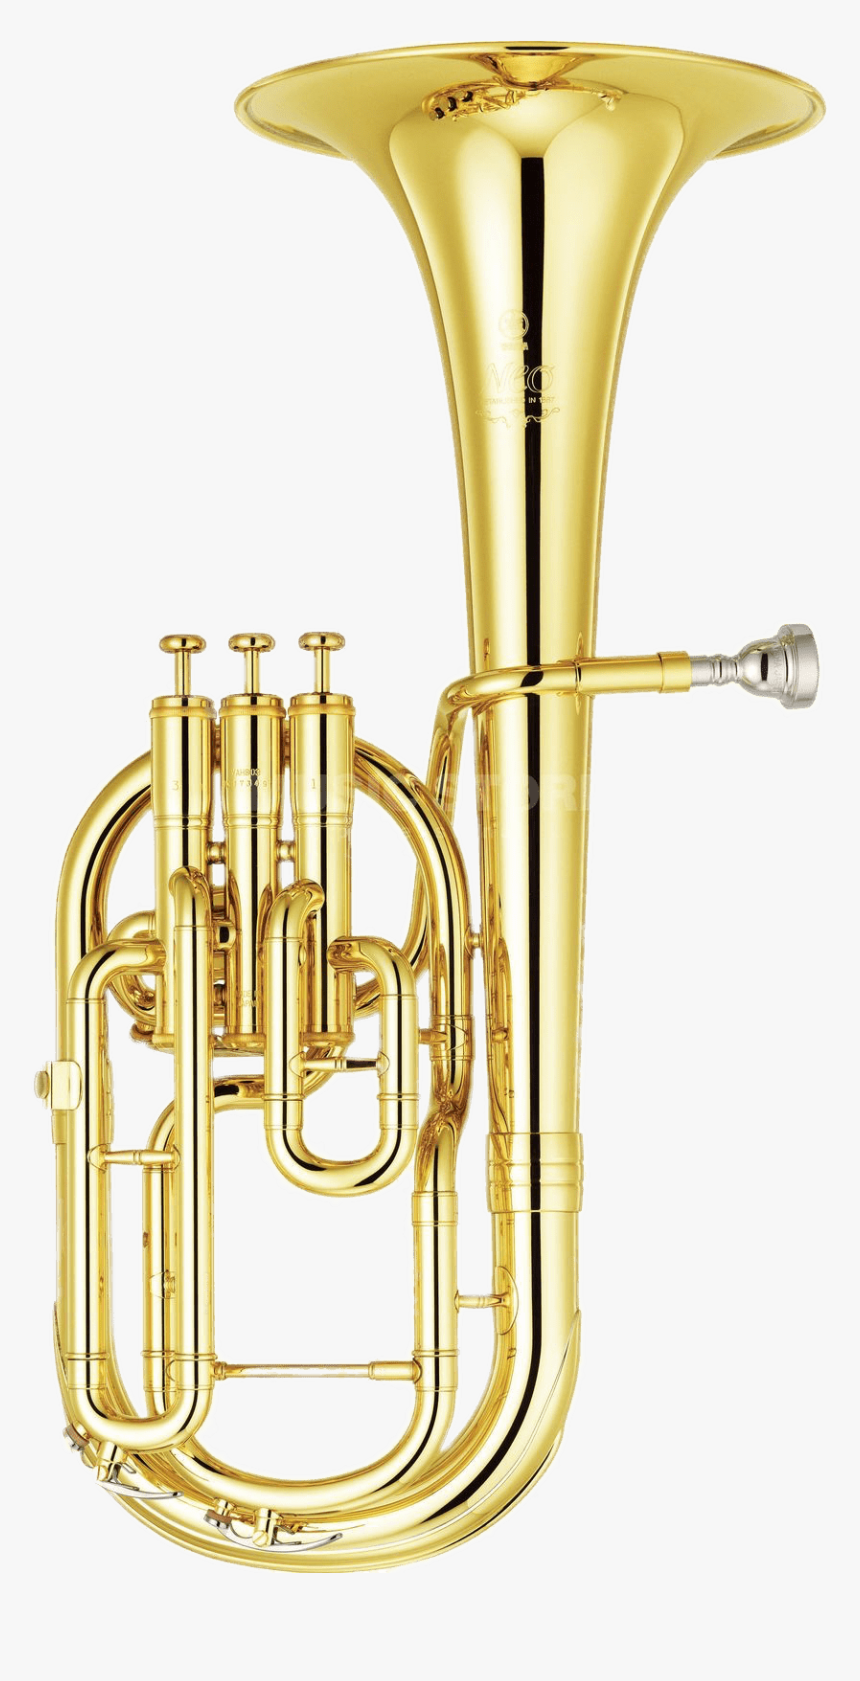 Yamaha Horn Png Stickpng - Yamaha Neo Tenor Horn, Transparent Png, Free Download